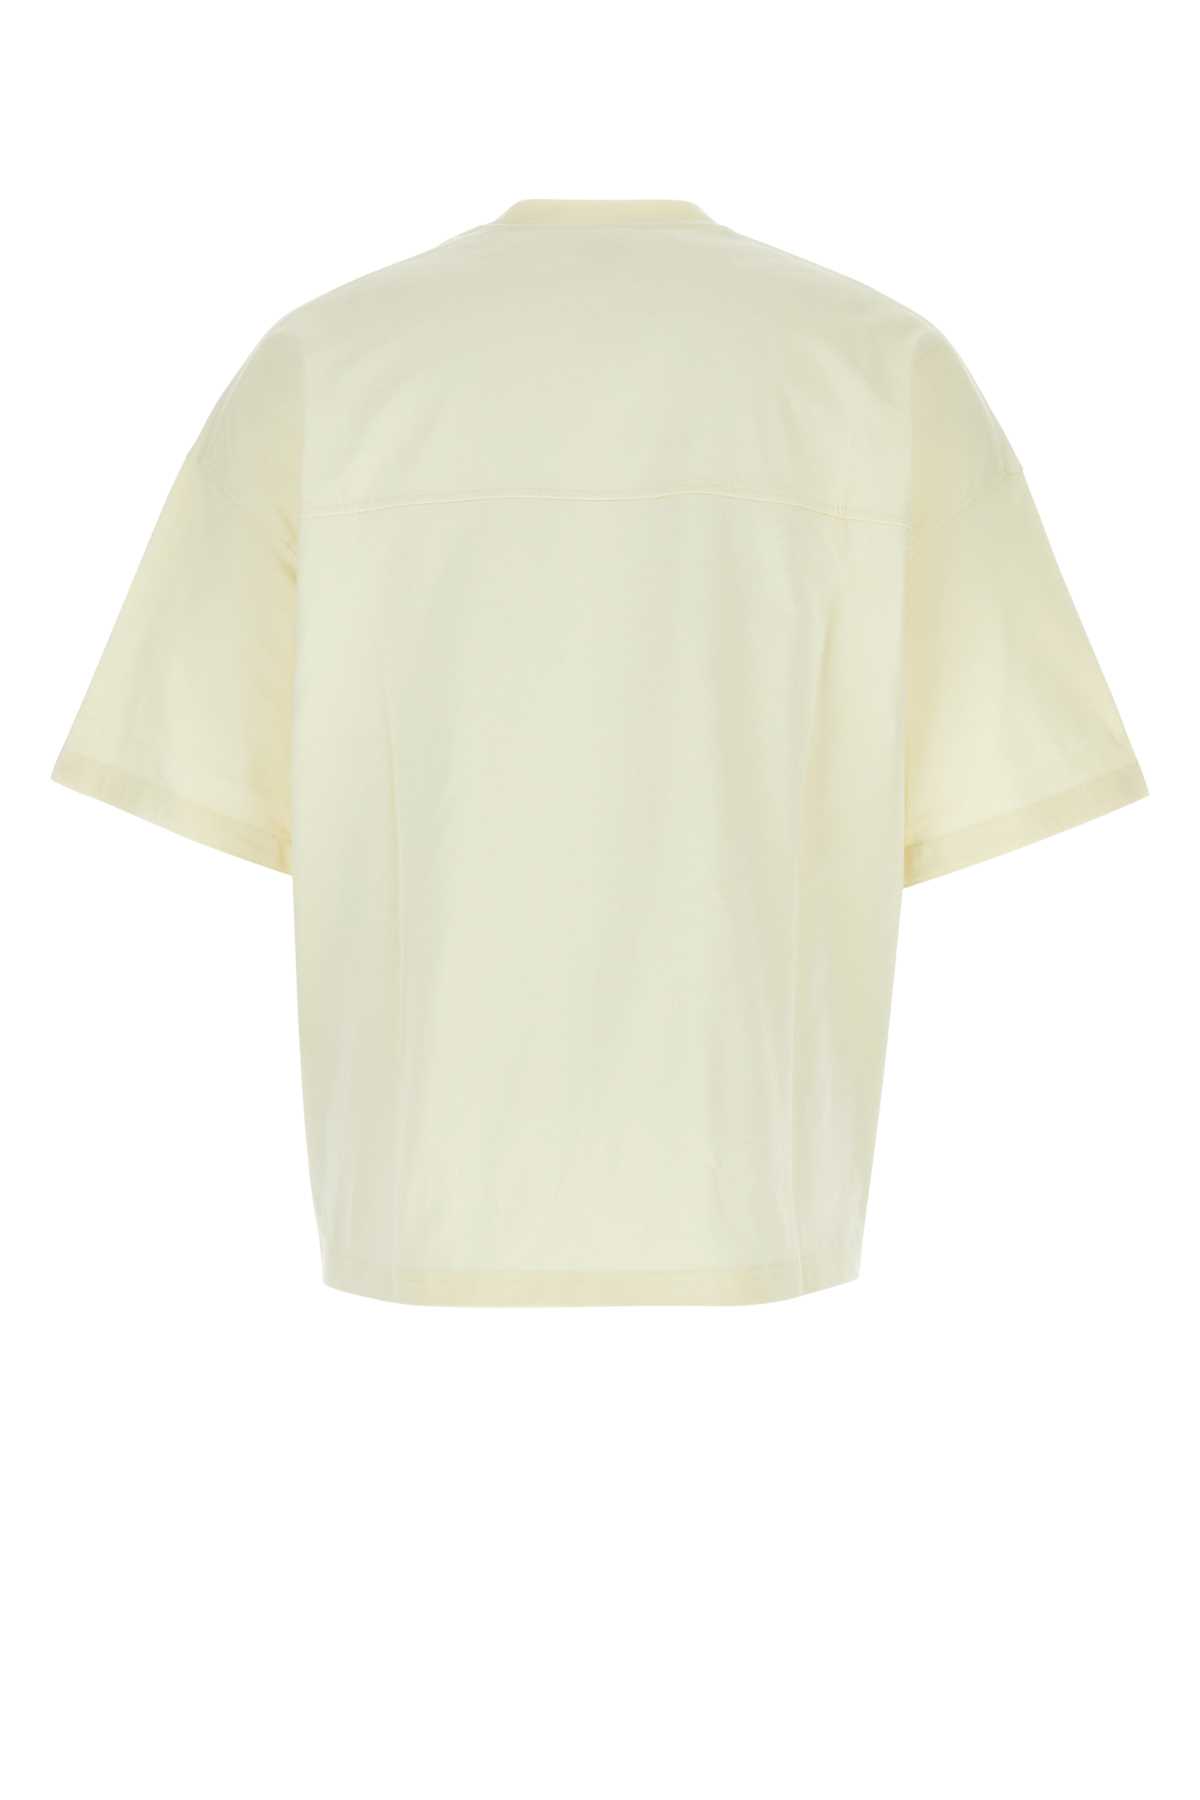 Bottega Veneta Pastel Yellow Cotton Oversize T-shirt In White